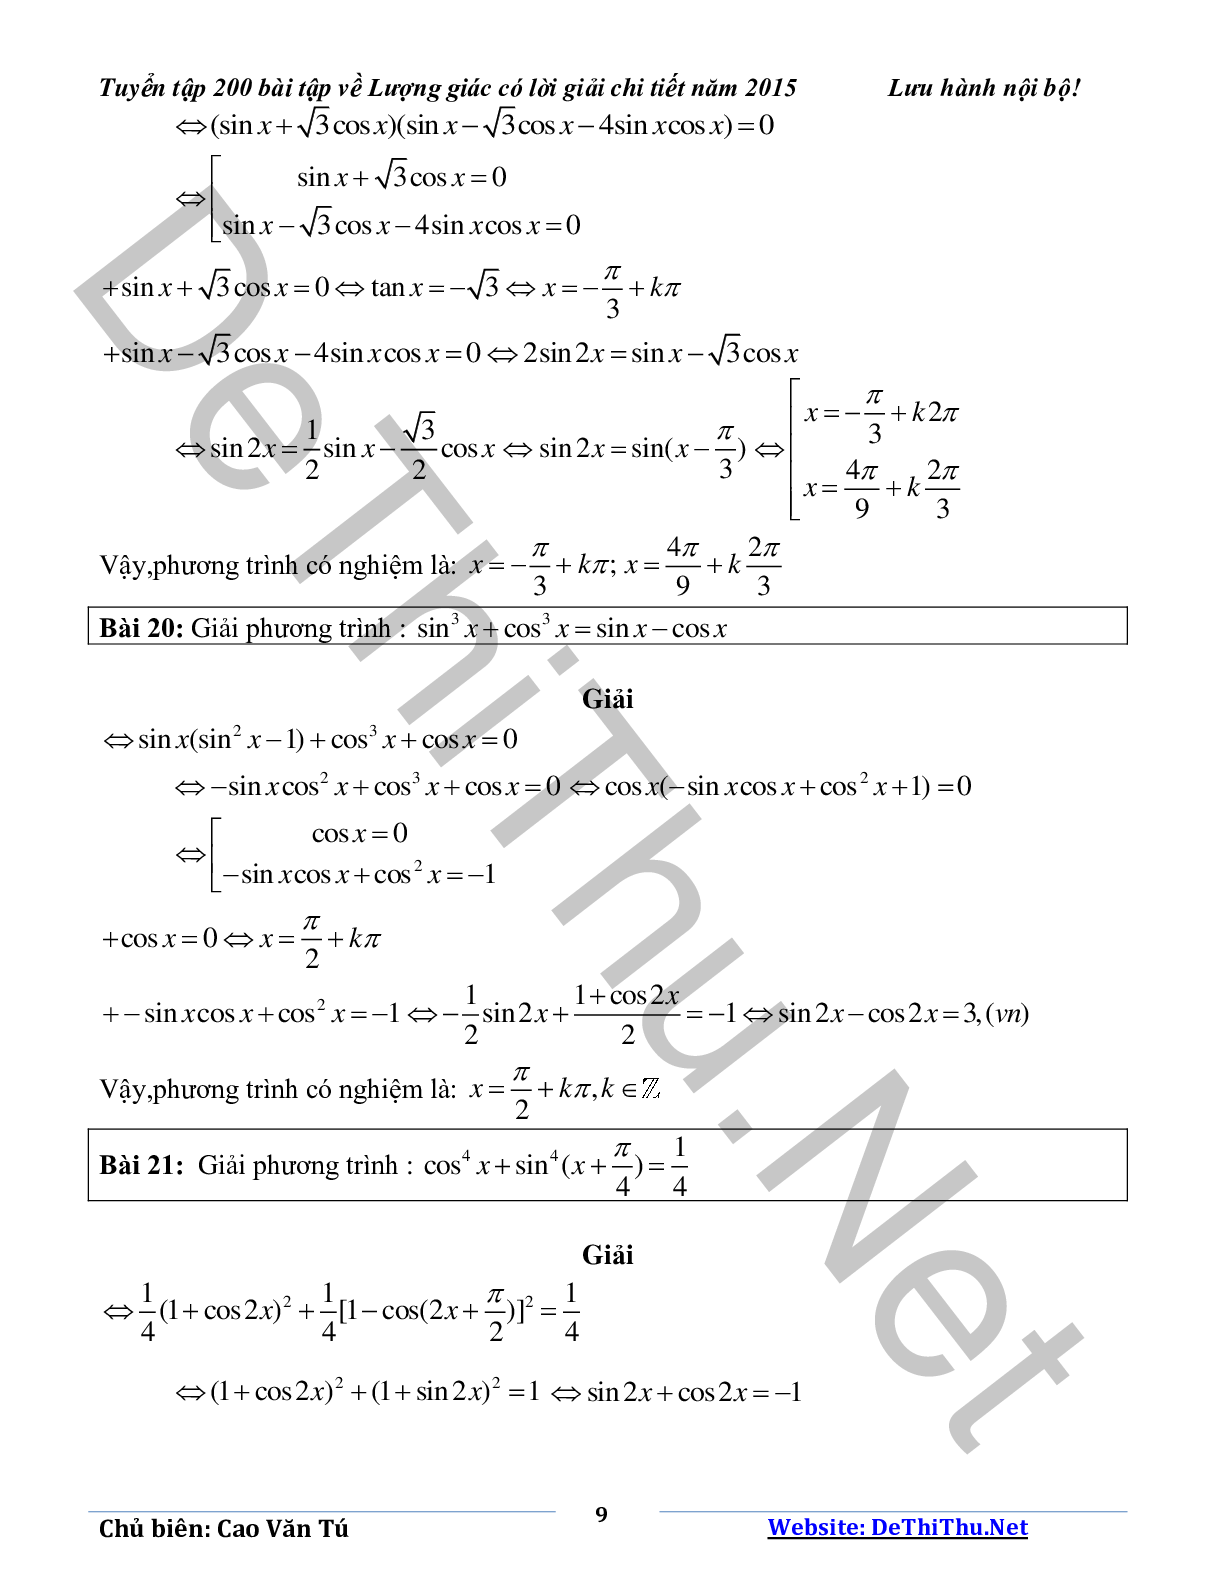 Tuyển tập 200 bài tập lượng giác có lời giải chi tiết năm 2015 (trang 9)